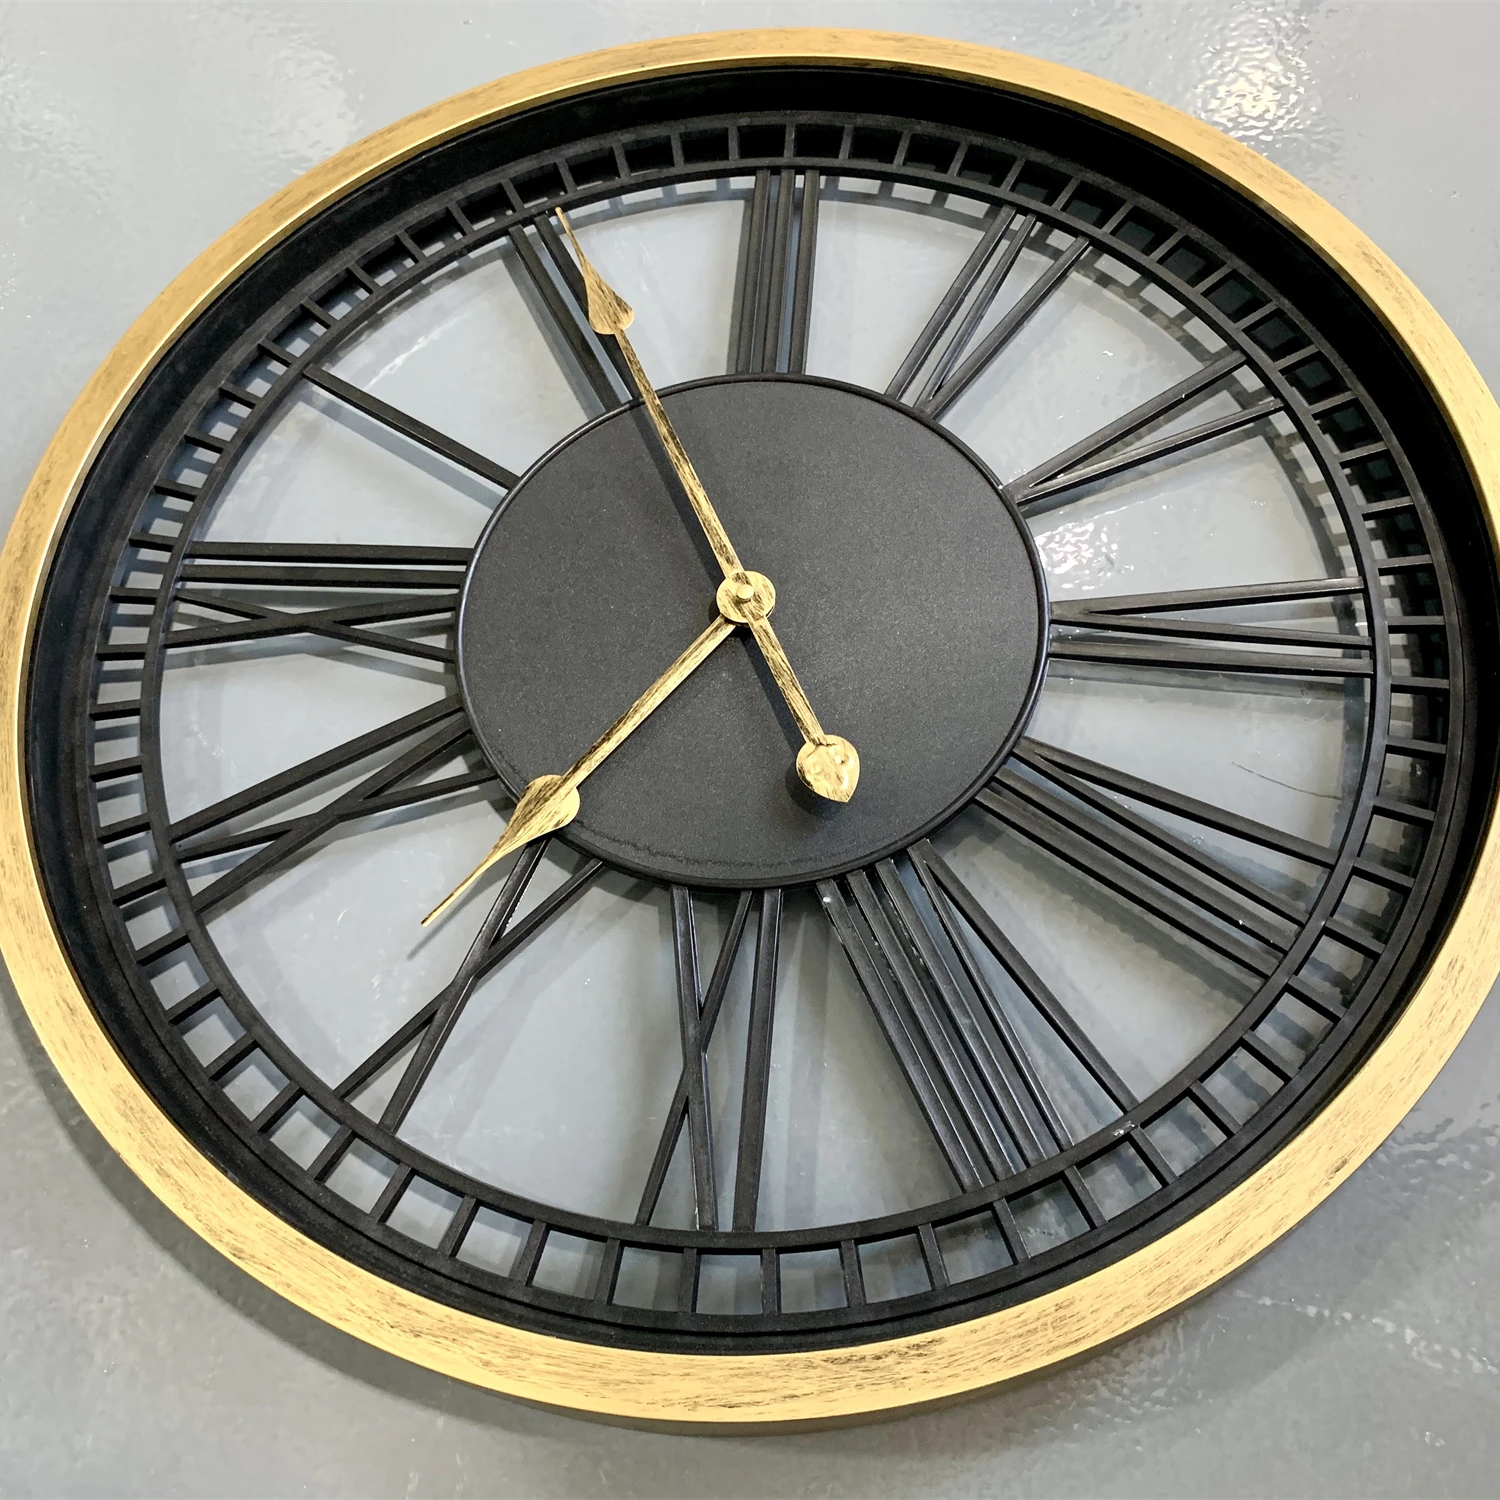 24 дюйма новый домашний декор кварцевые круглые пластиковые большие настенные часы Чжанчжоу завод Поставщик Сублимации большие часы